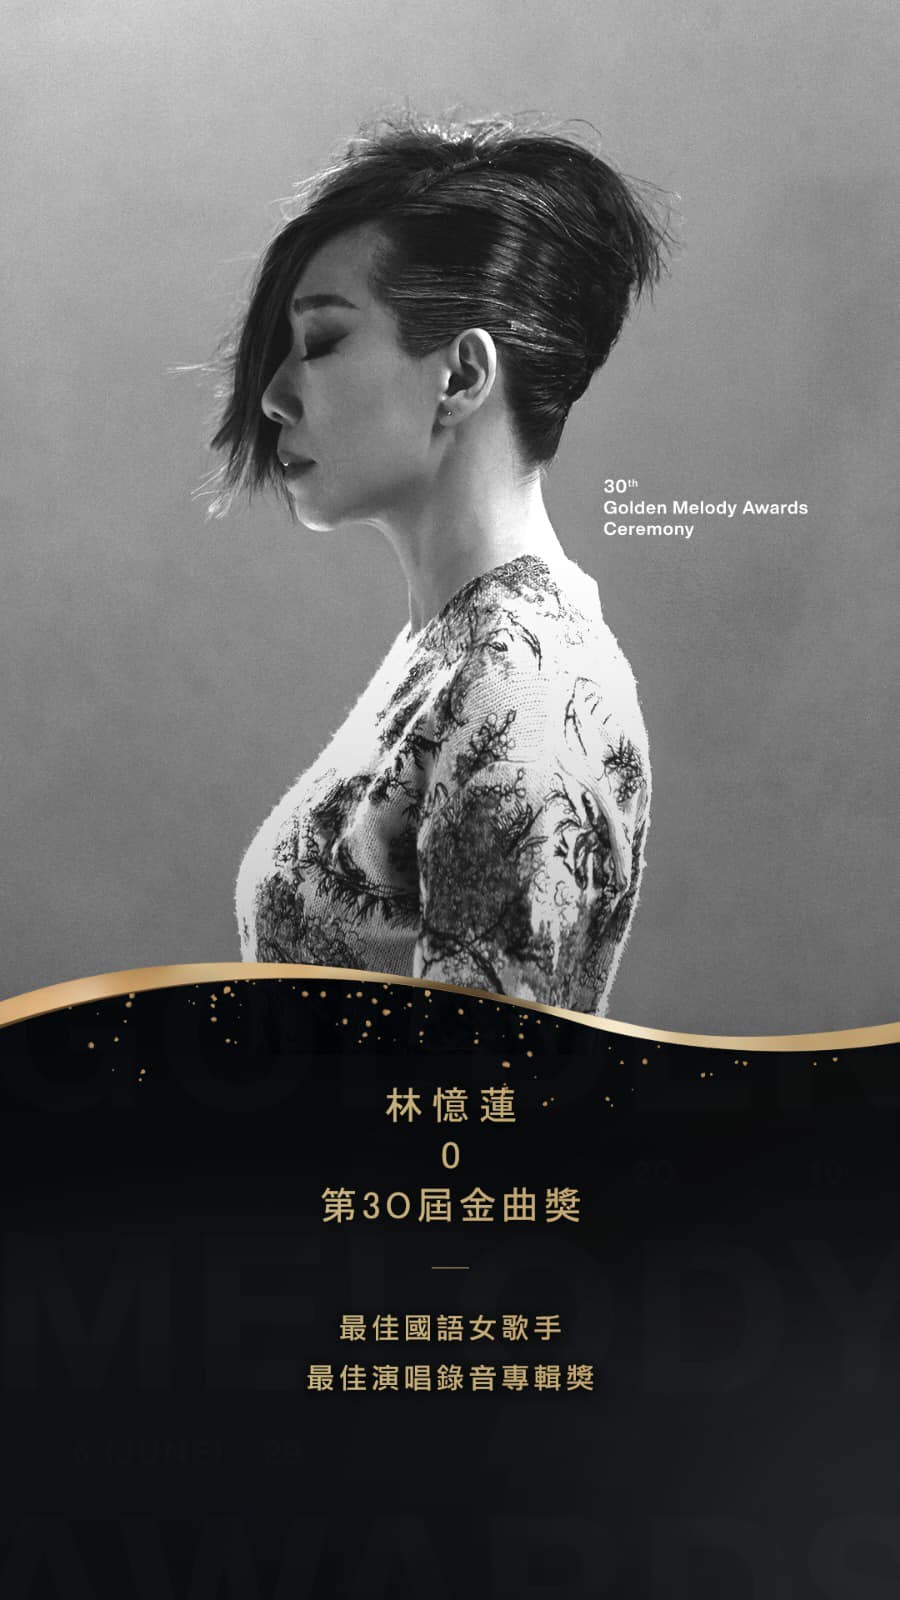 林忆莲翌年获得台湾《第30届金曲奖》之「最佳国语女歌手奖」及「最佳演唱录音专辑奖」。